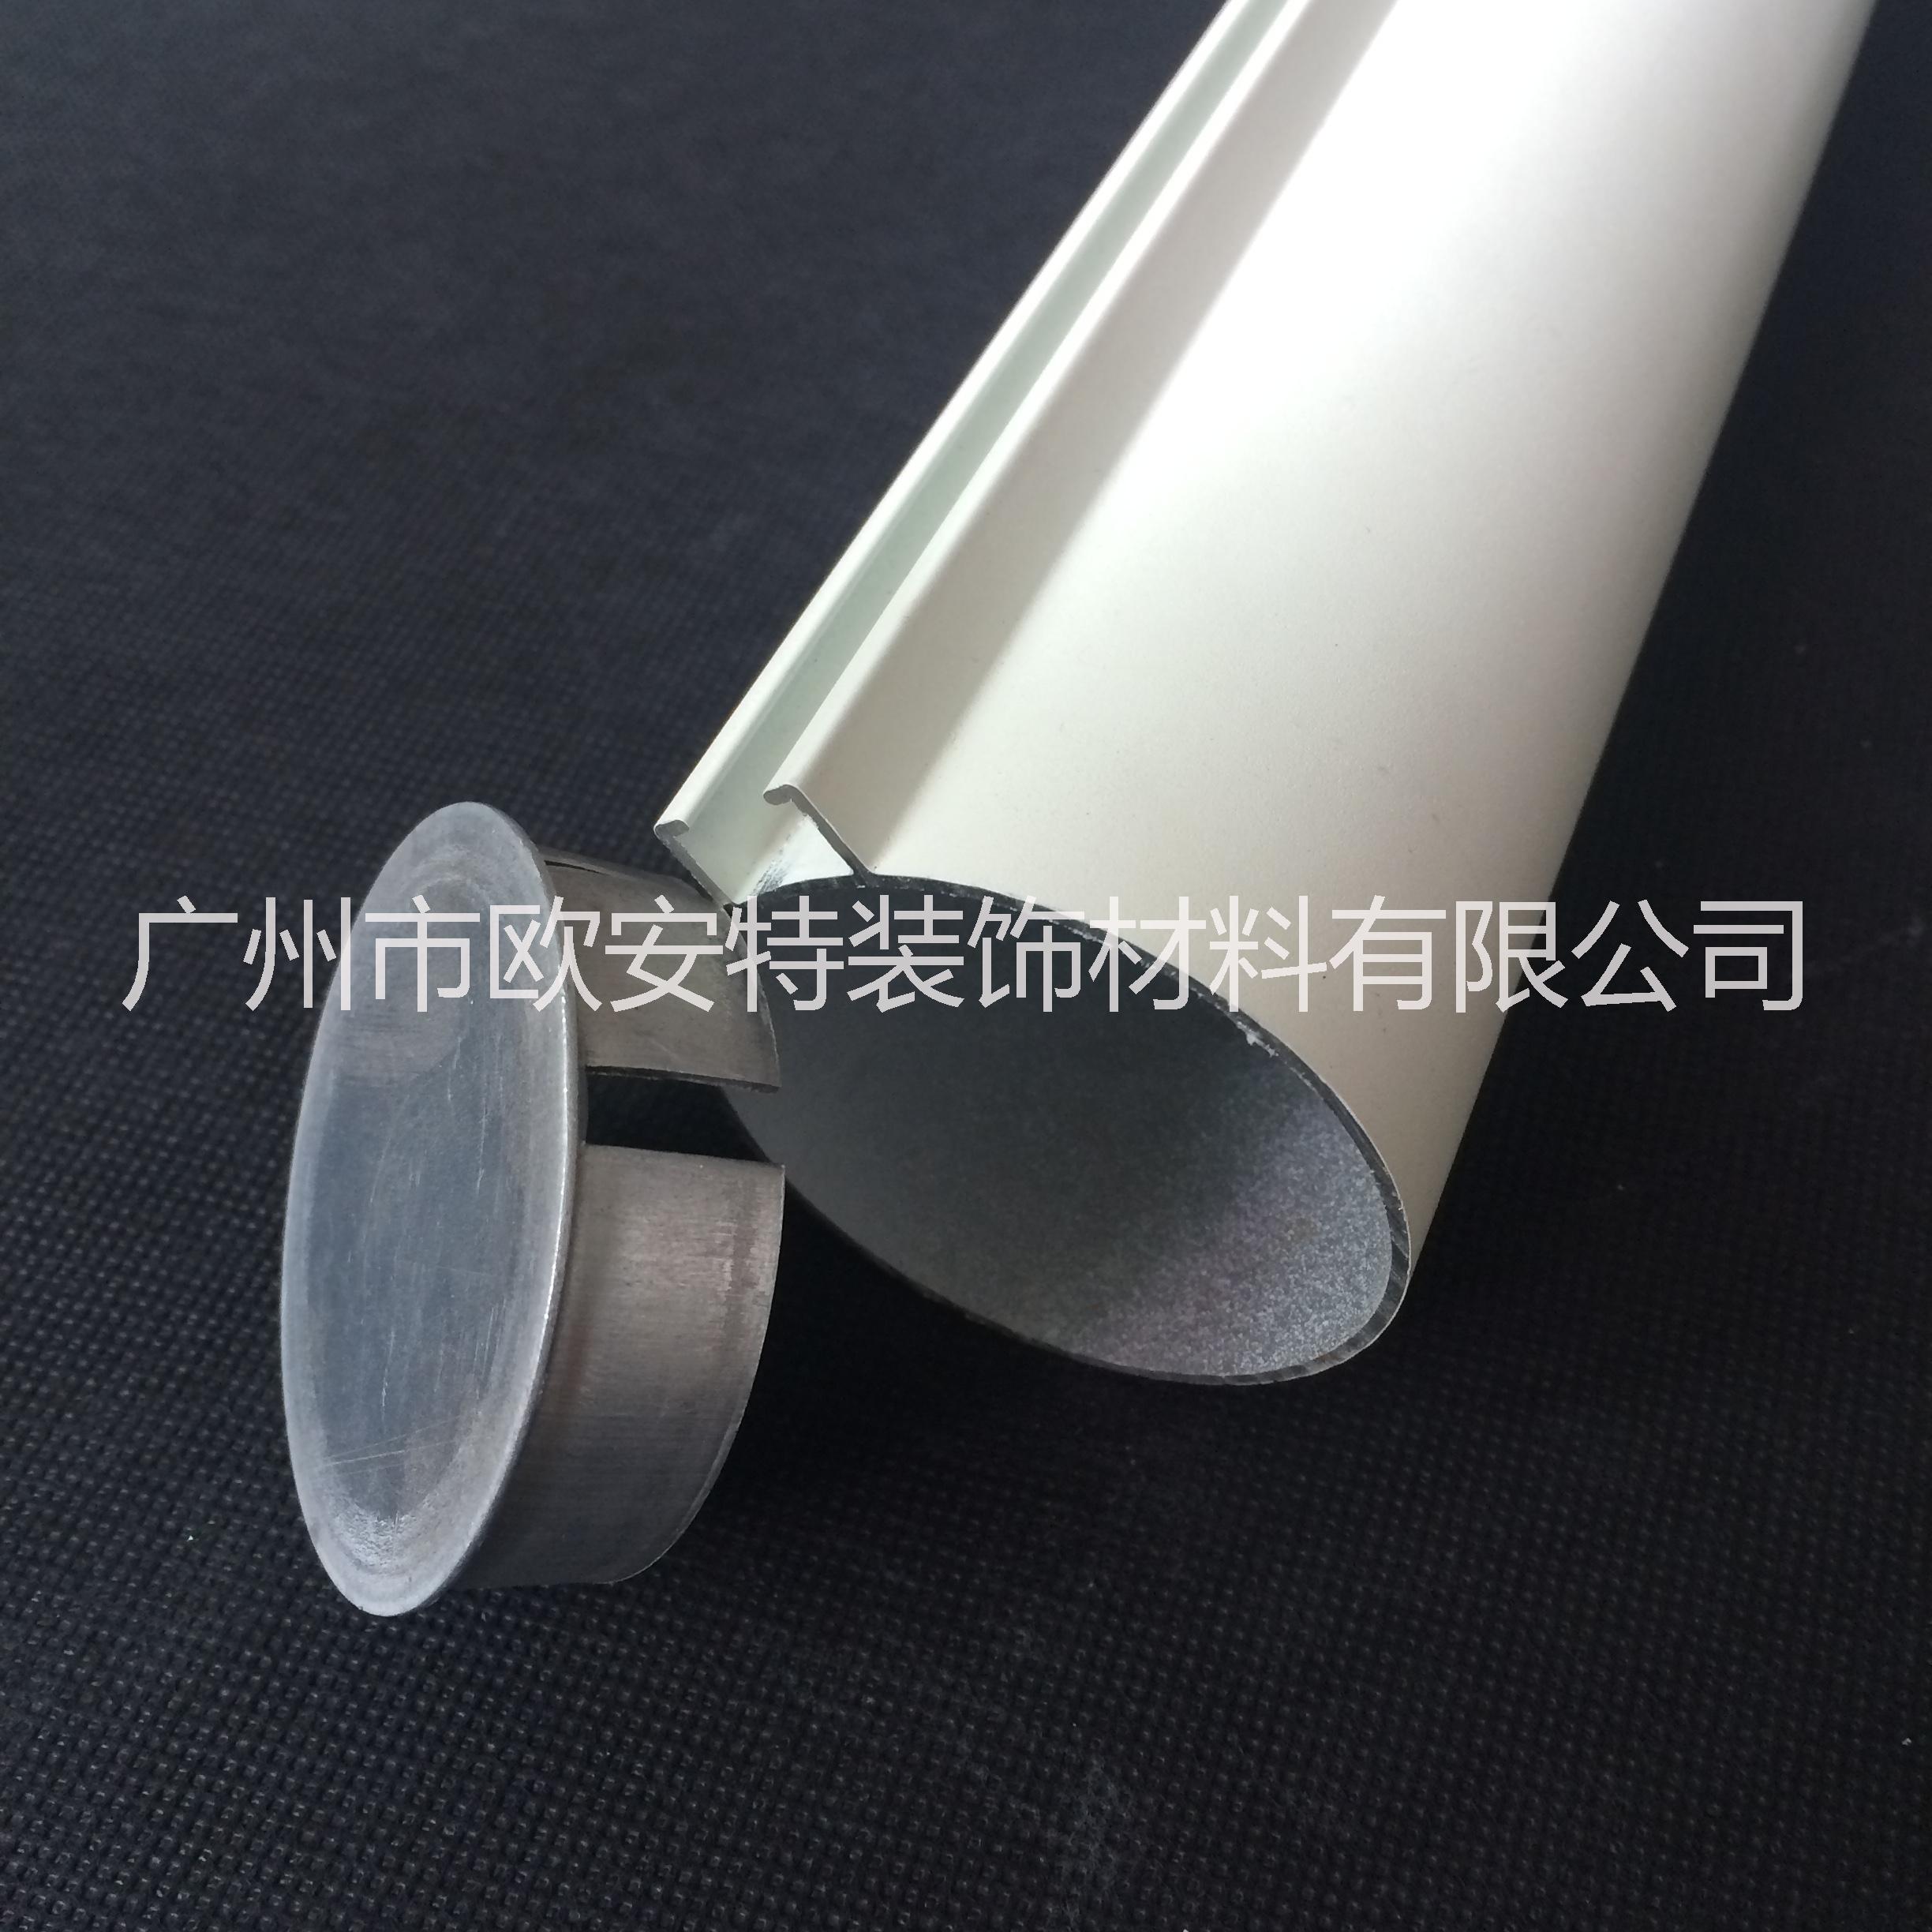 型材铝方通 铝圆管 铝型材铝圆管天花 铝圆管生产厂图片